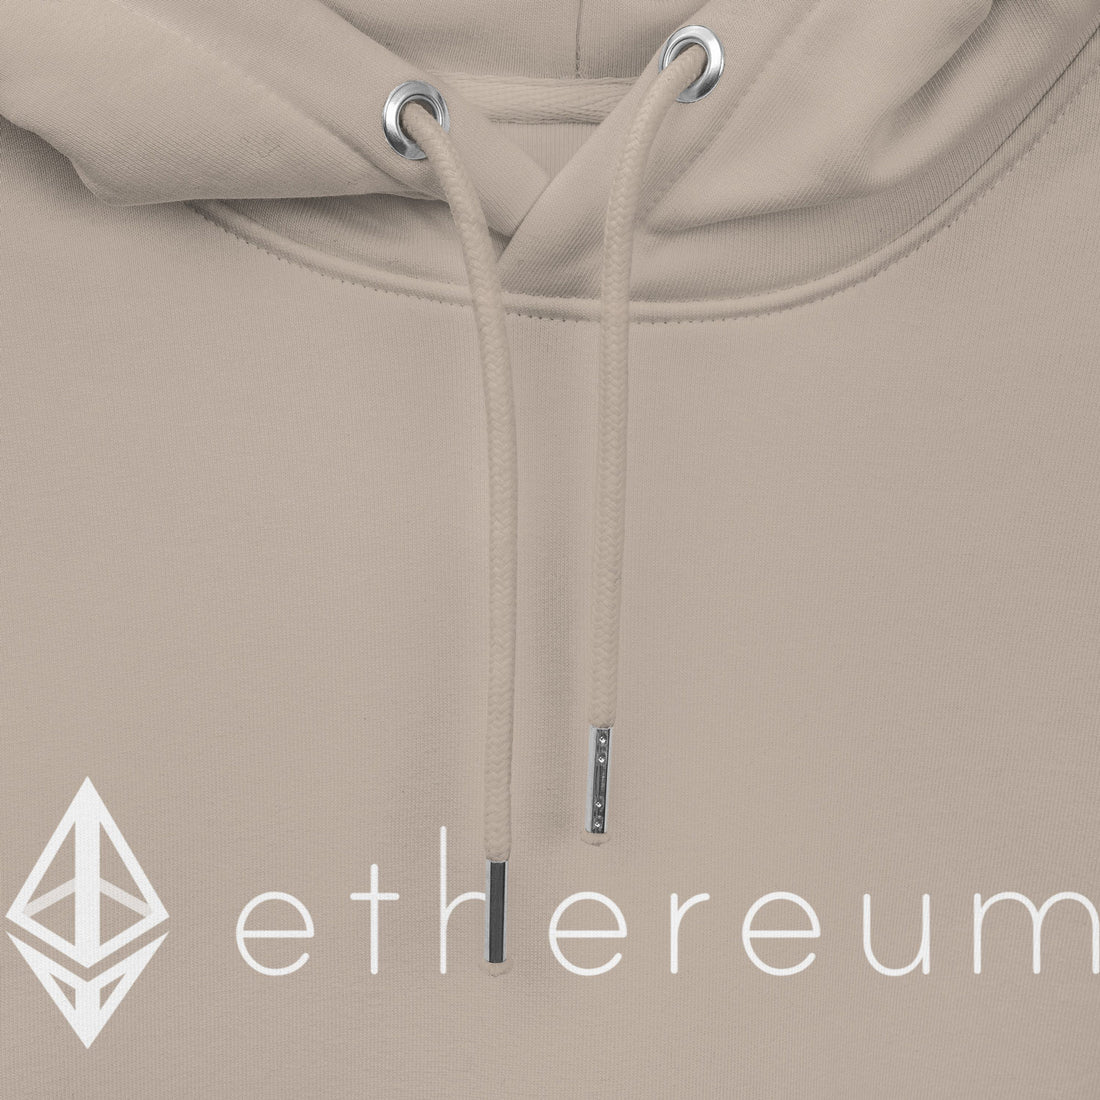 eth ethereum logo hoodie